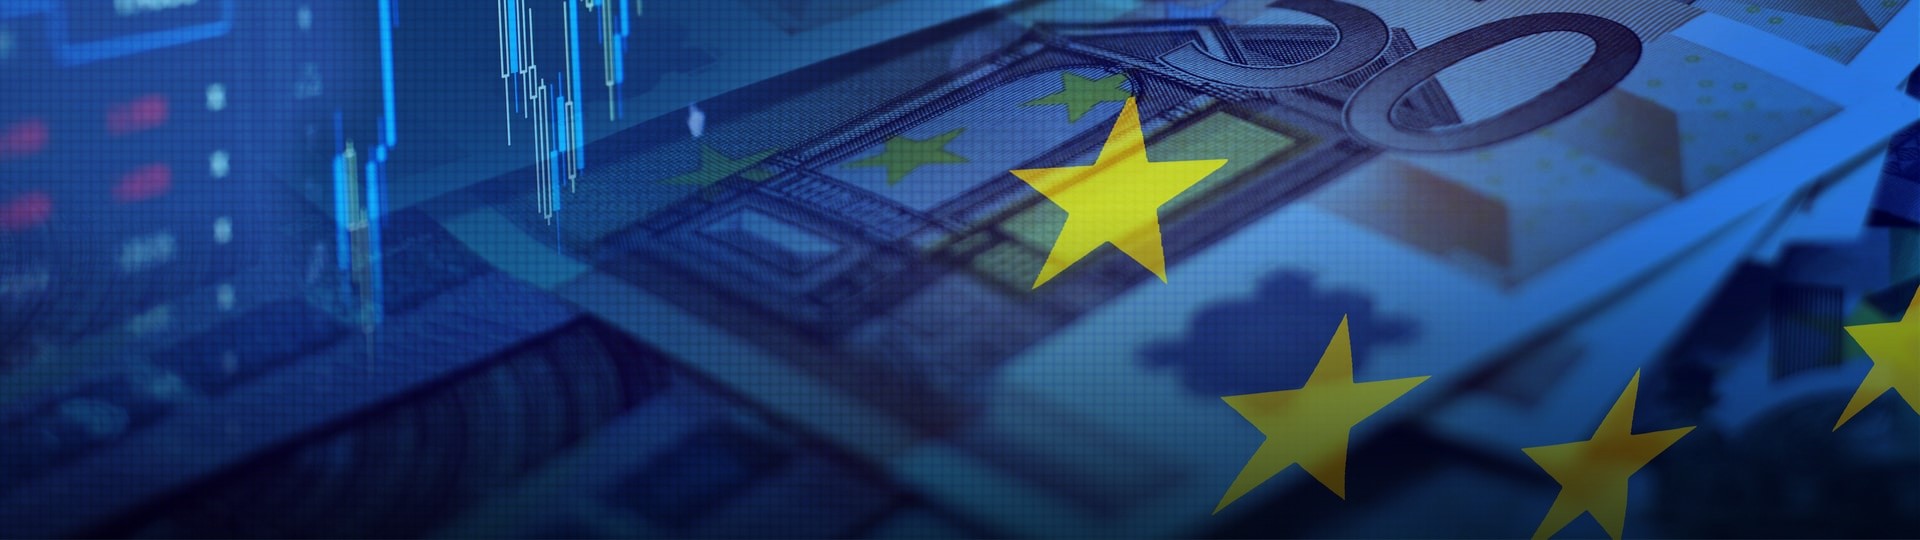 Ekonomika EU loni vzrostla o 1,4 procenta